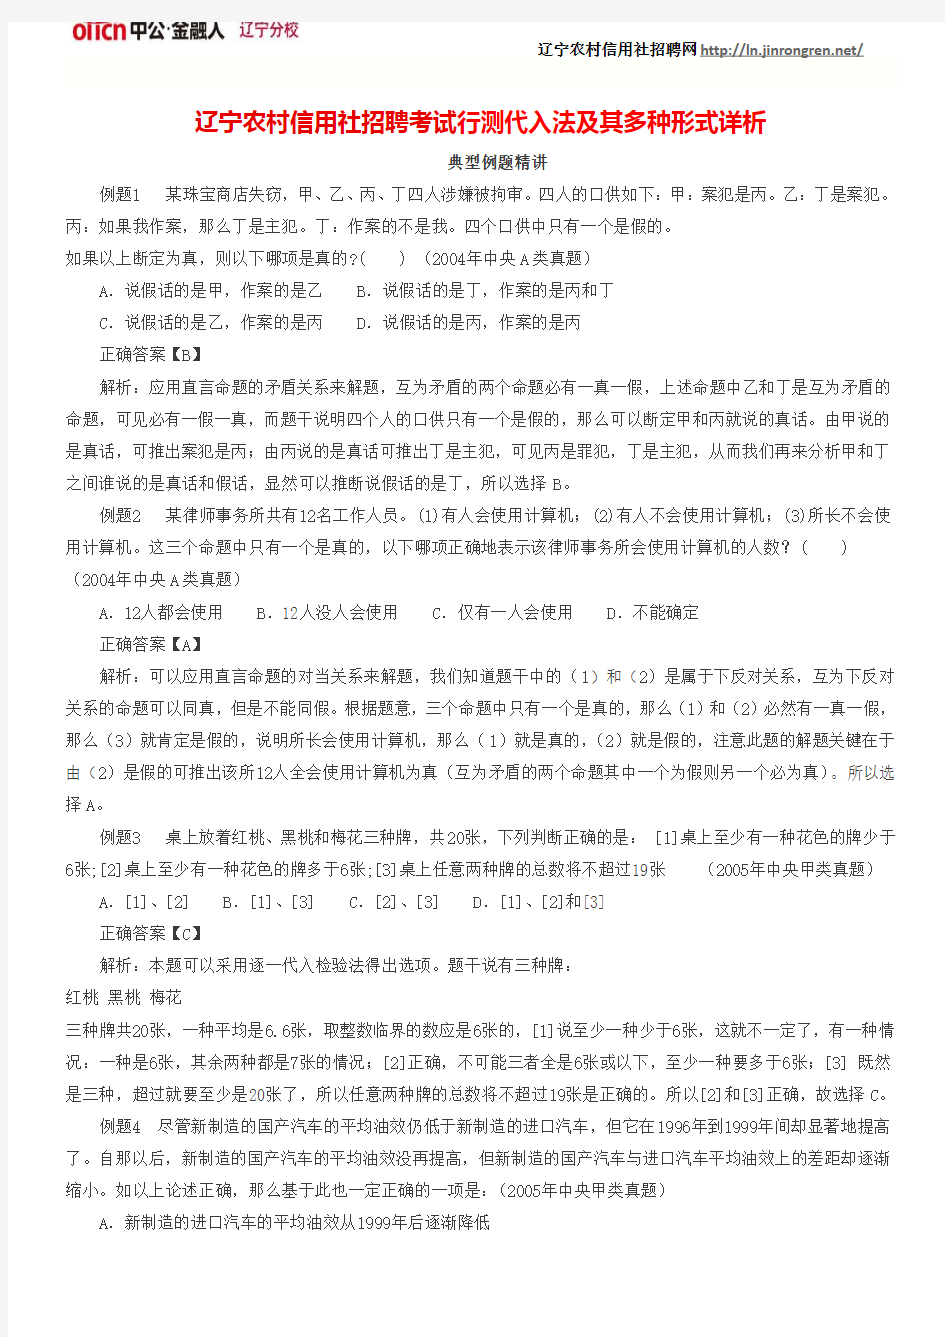 辽宁农村信用社招聘考试行测代入法及其多种形式详析